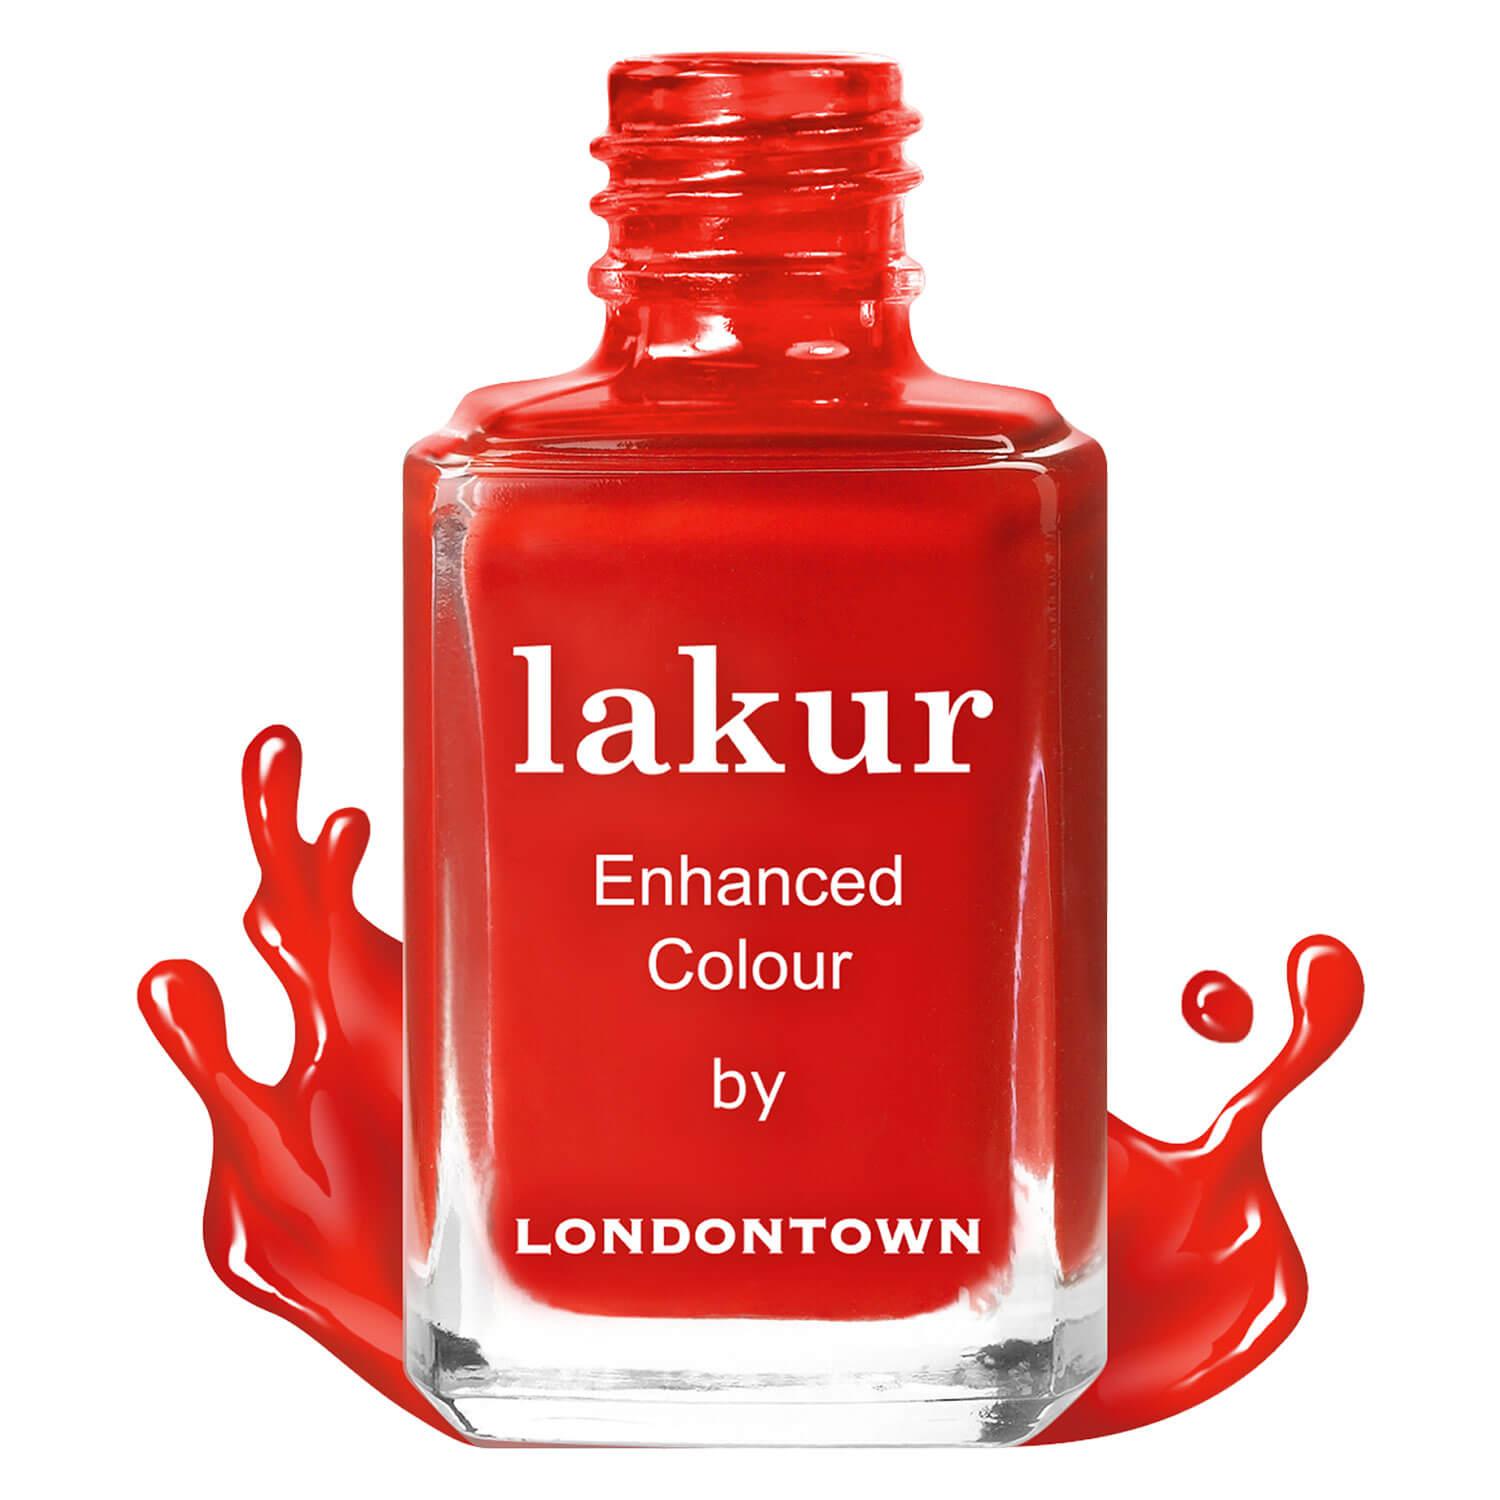 lakur - Londoner Love